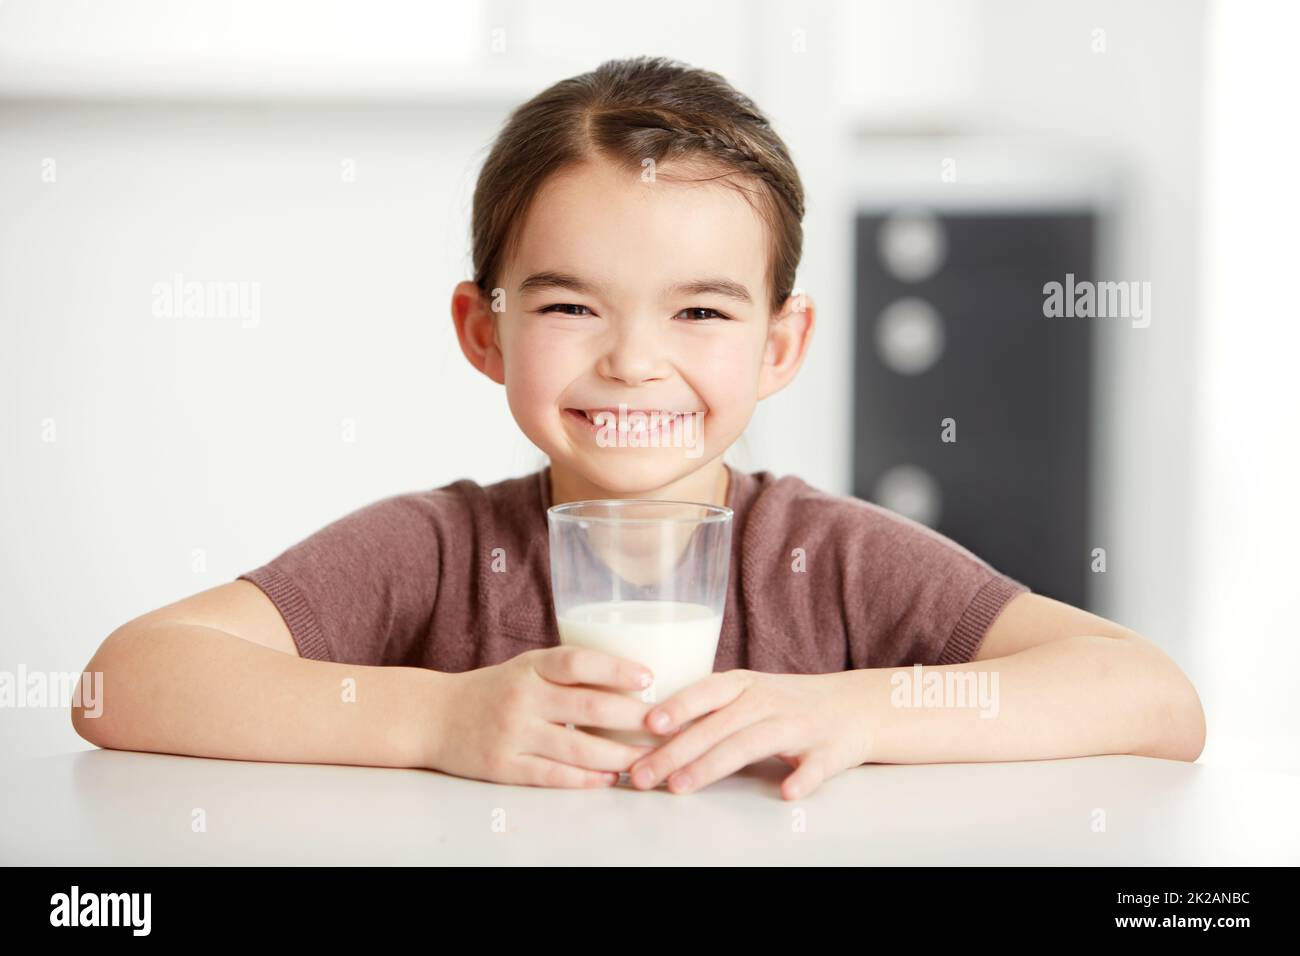 Des os sains, des enfants heureux. Portrait d'une petite fille mignonne appréciant un verre de lait. Banque D'Images